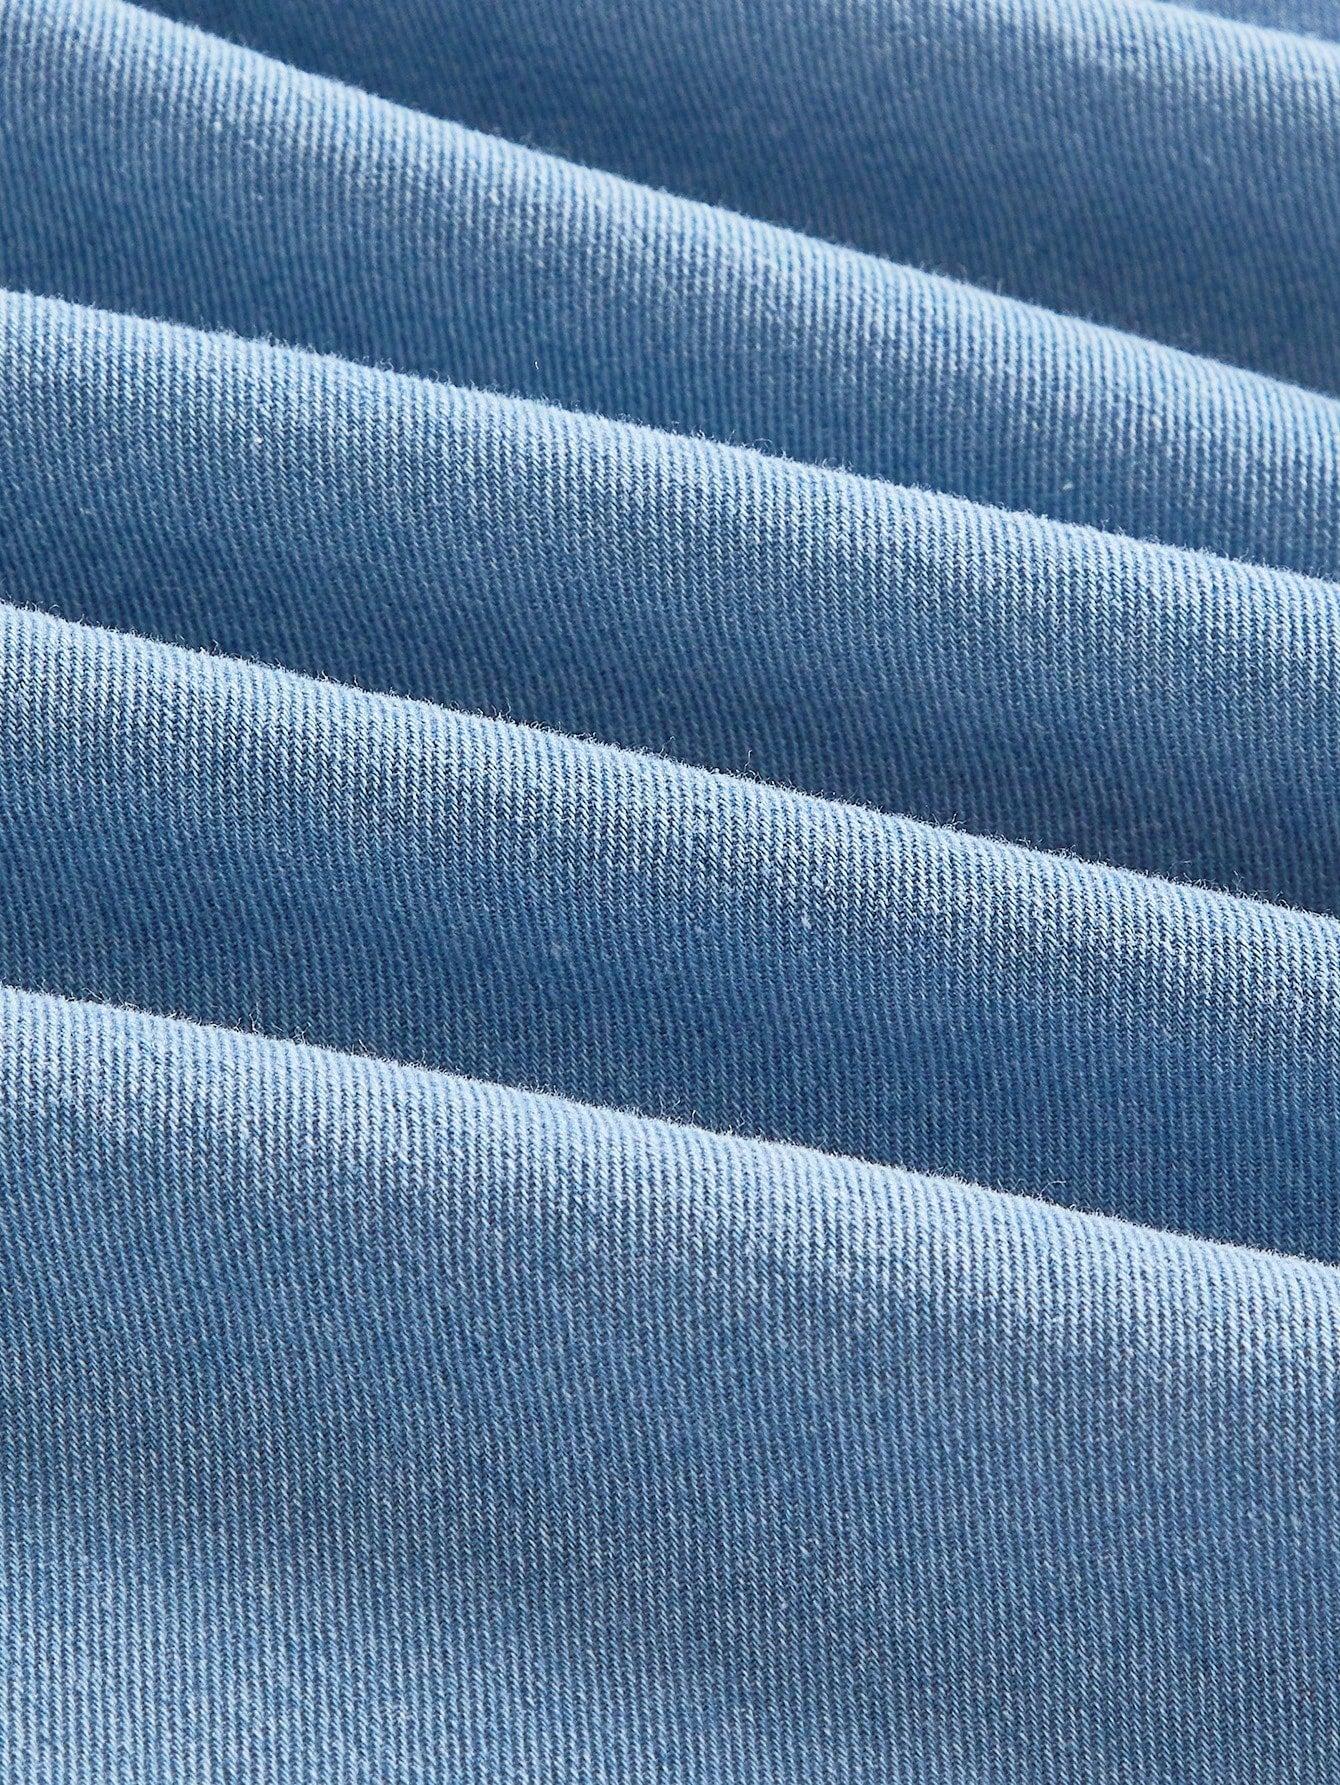 niebieska jeansowa mini sukienka wiązanie